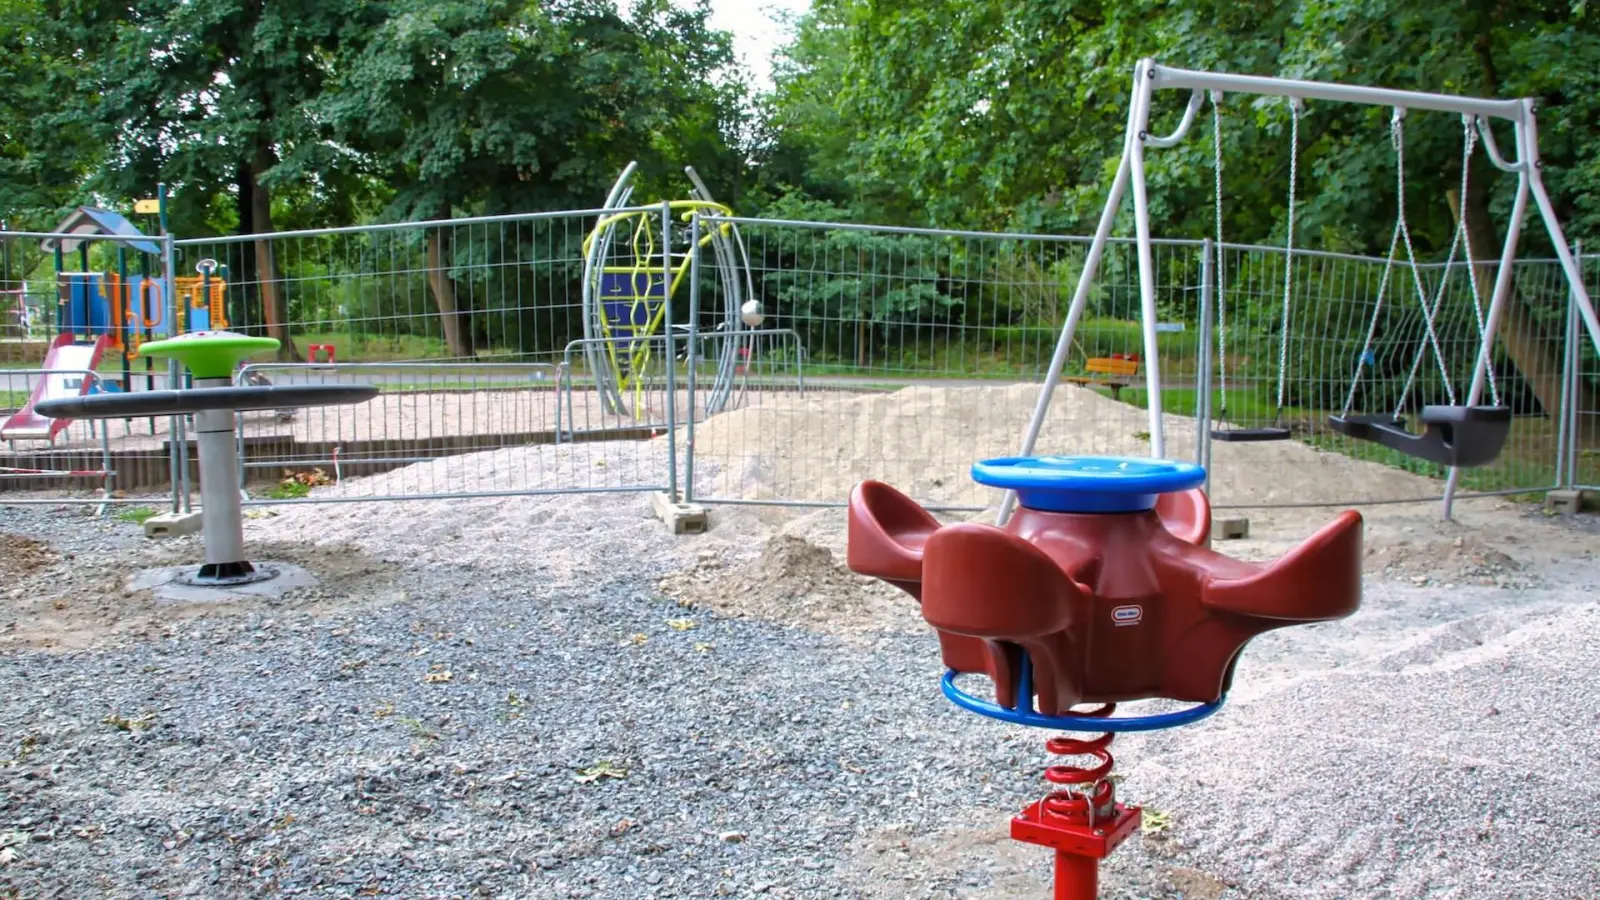 Nun endlich: Spielplatz im Park wird erweitert (Foto: taucha-kompakt.de)